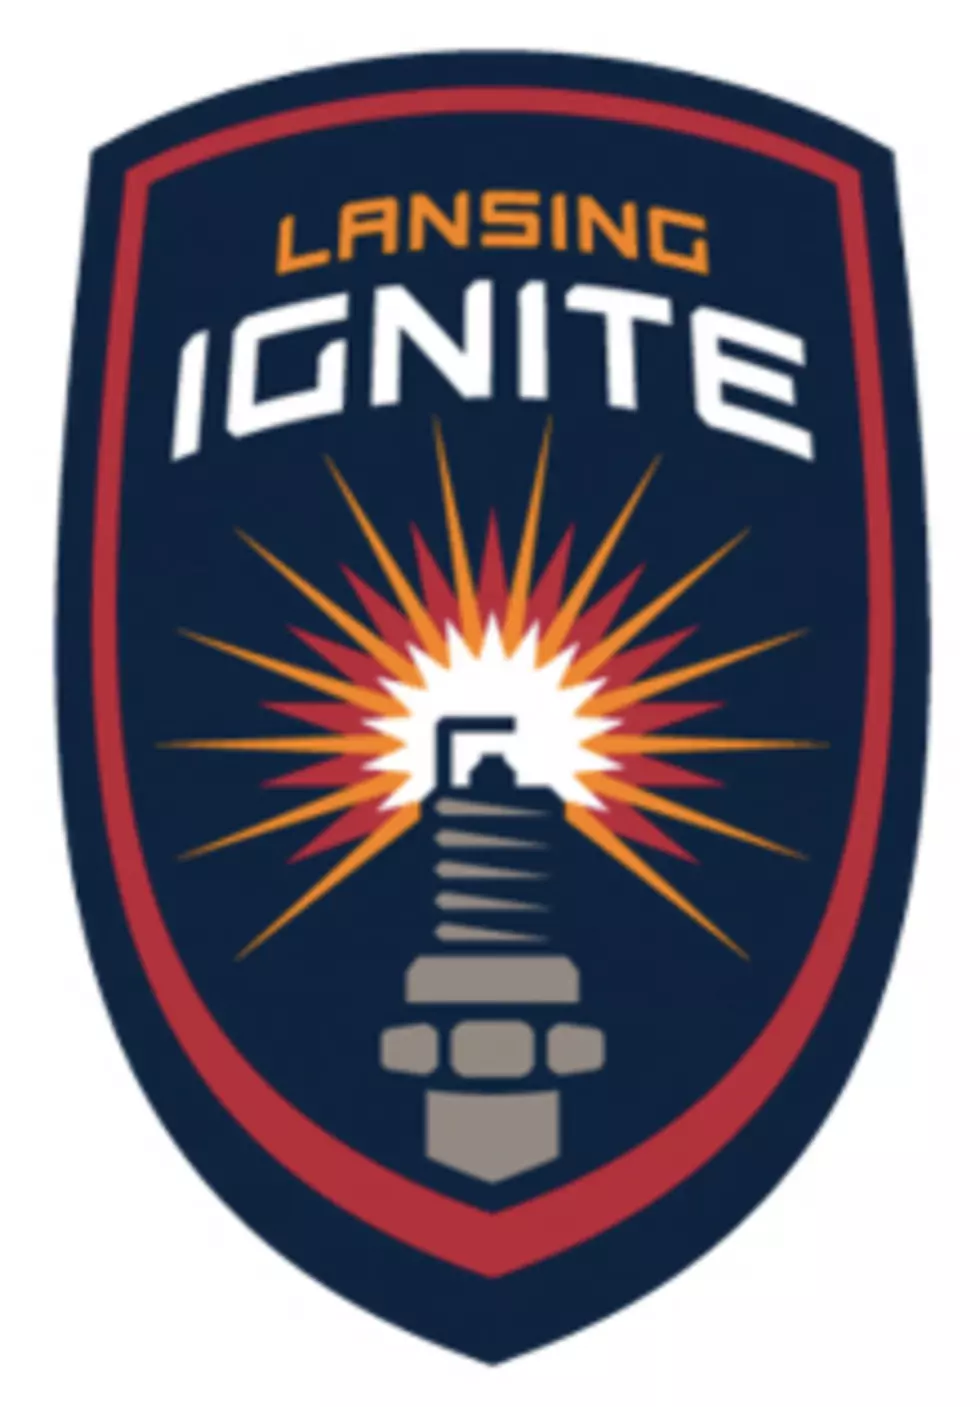 Lansing Ignite College Night & More This Saturday